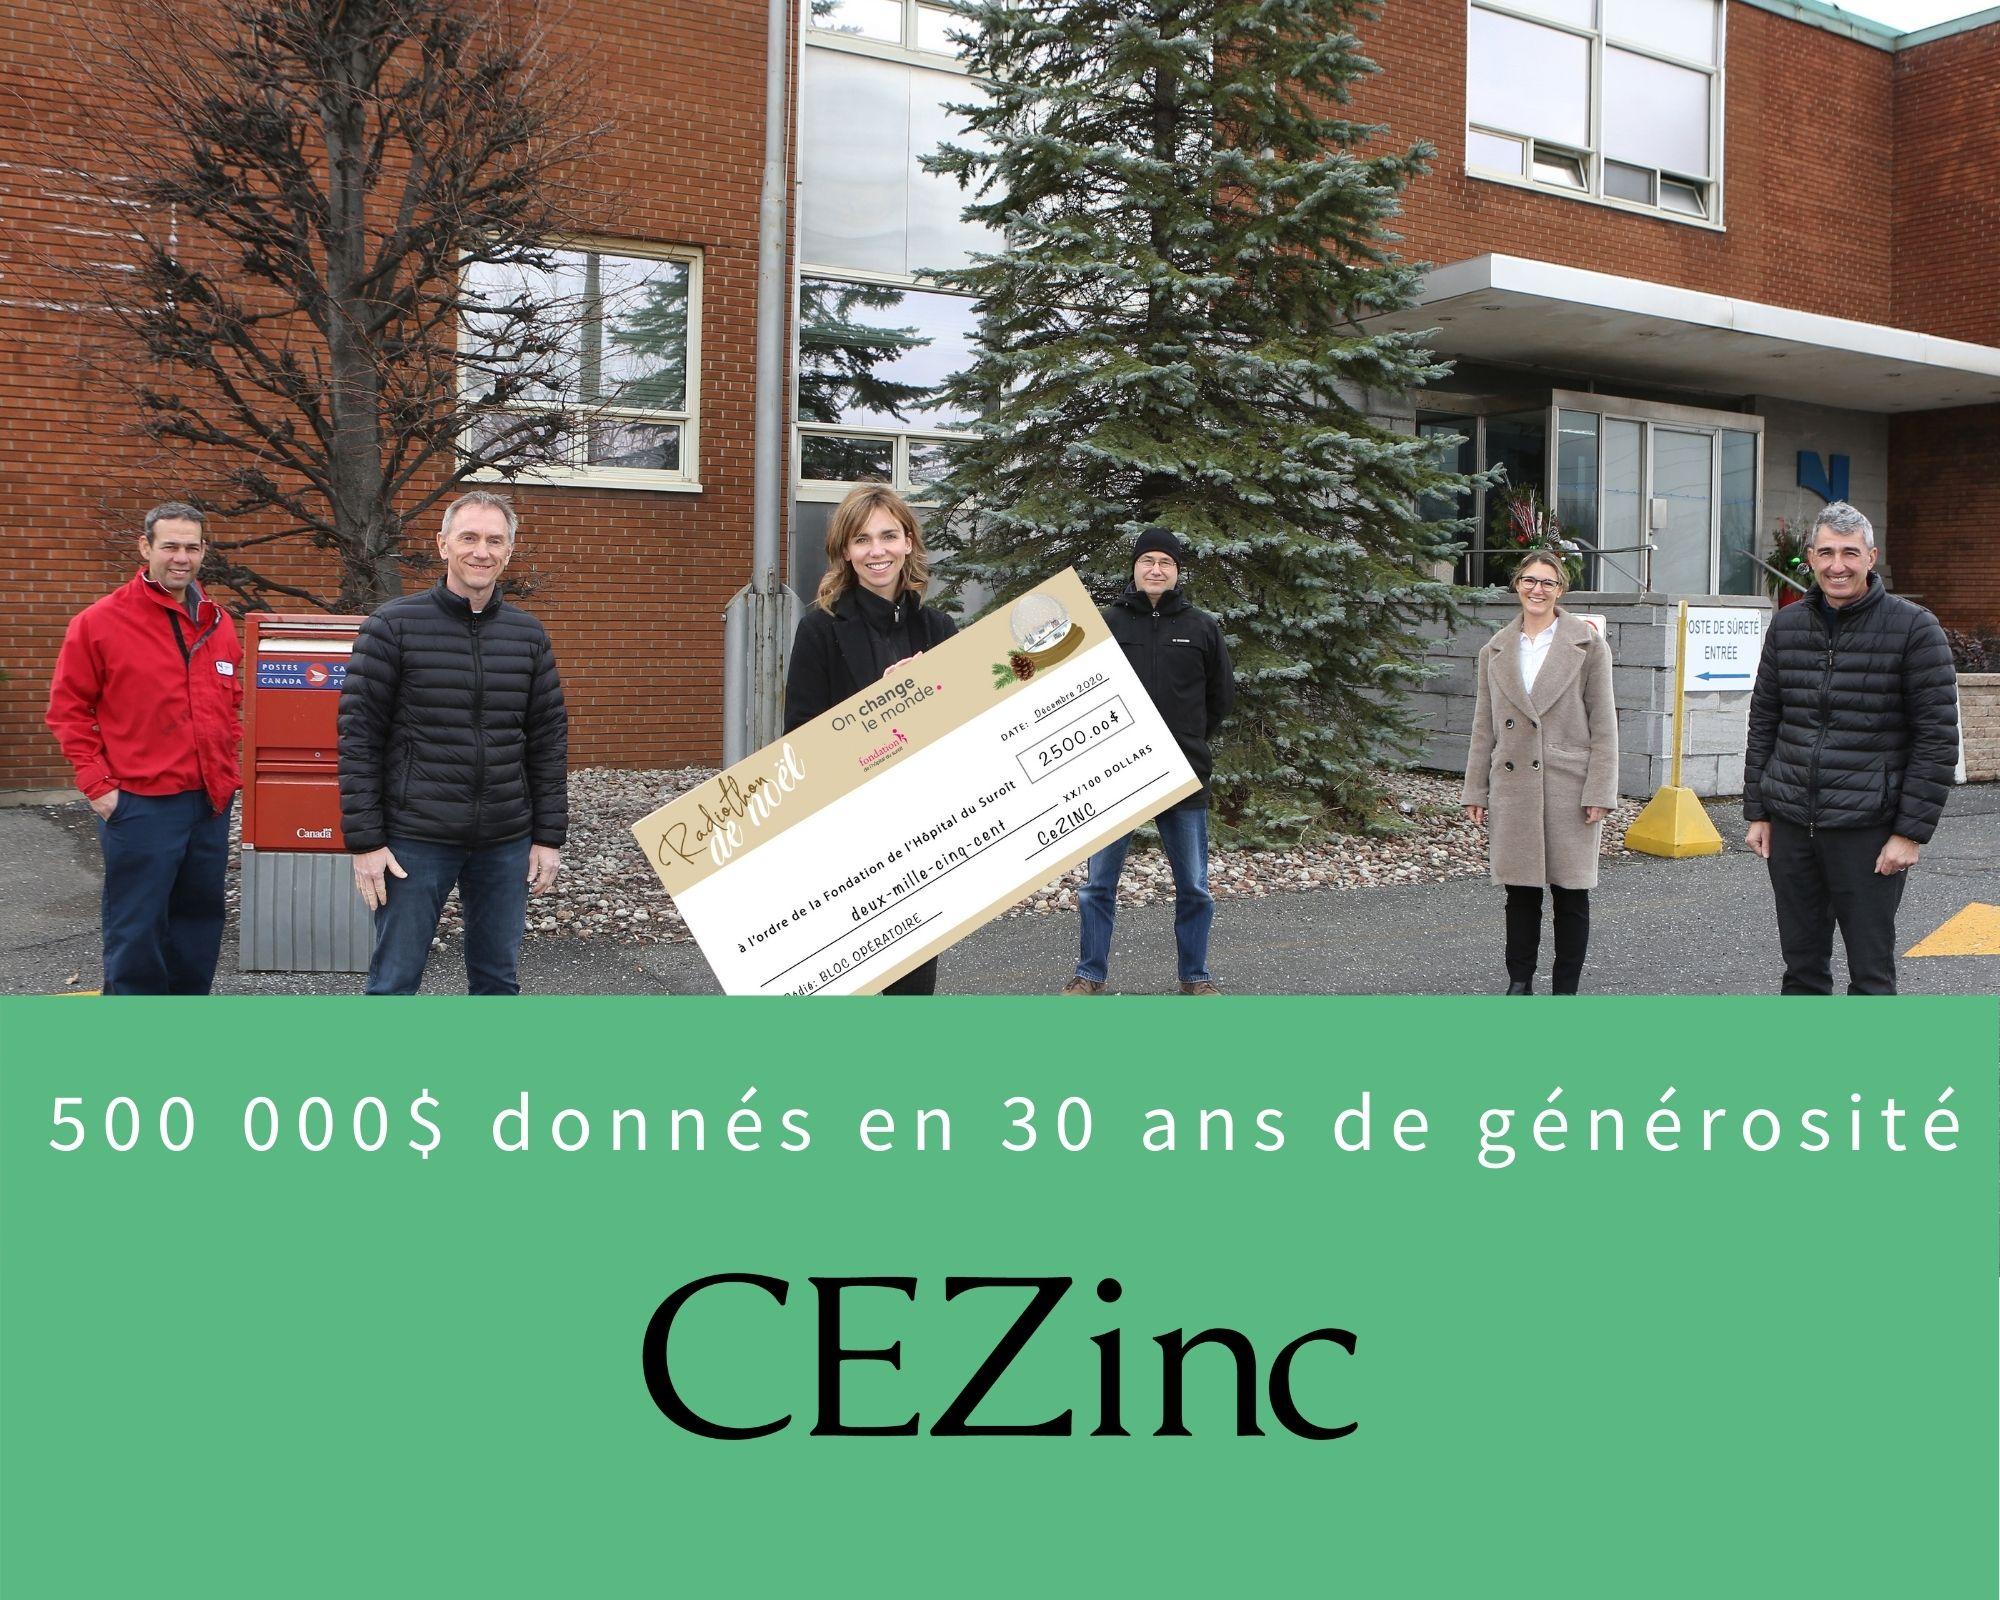 500-000-donn%C3%A9s-CEZinc-Donateur-Bienfaiteur-Fondation-H%C3%B4pital-Suro%C3%AEt.jpg#asset:1715